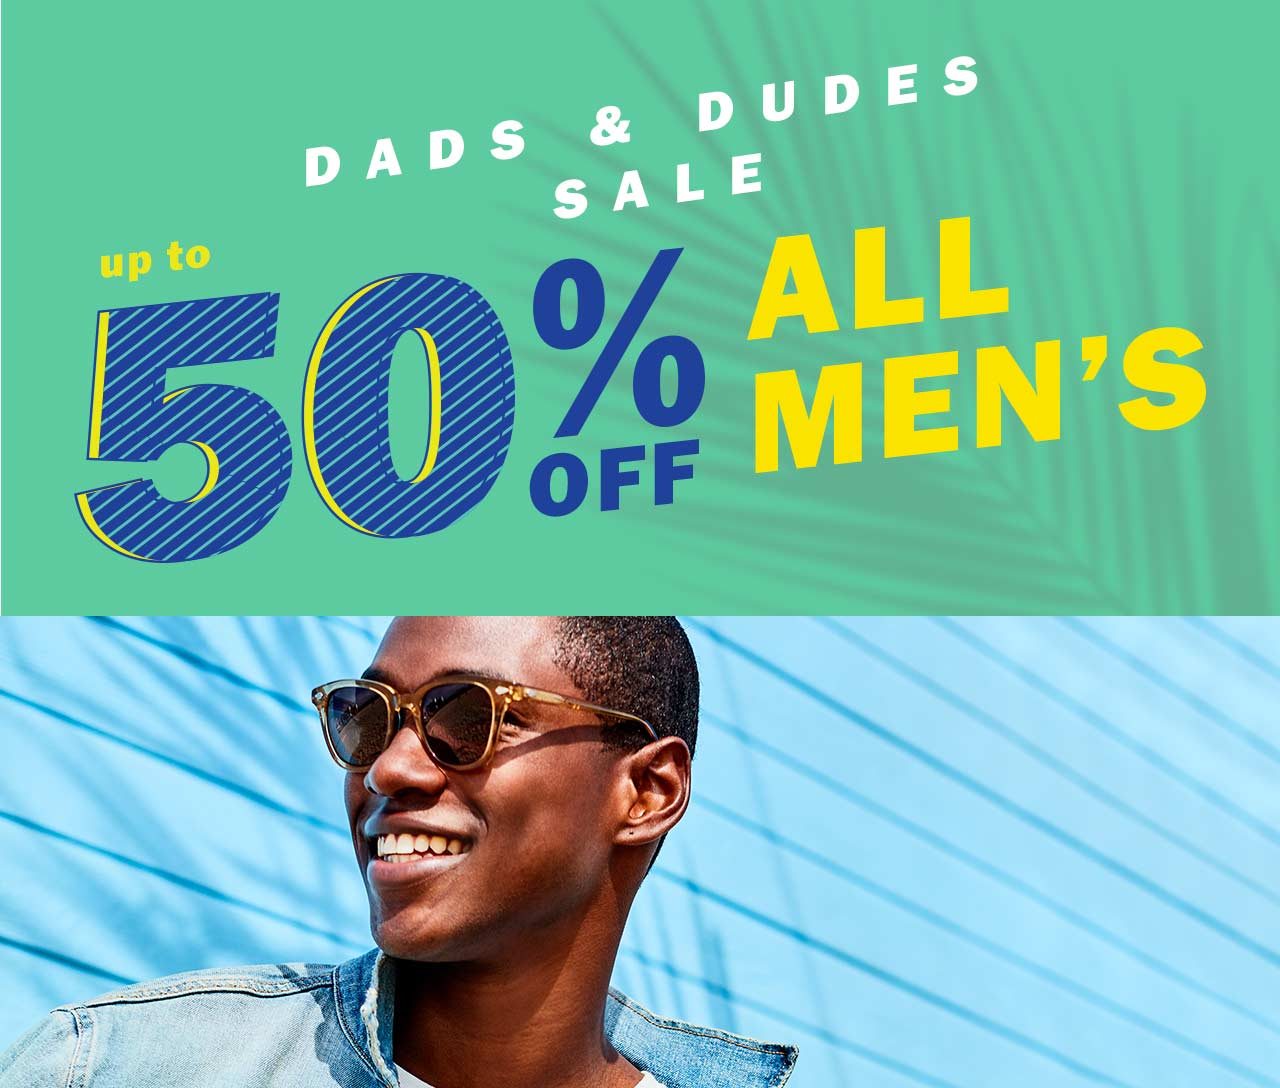 Dads & dudes sale